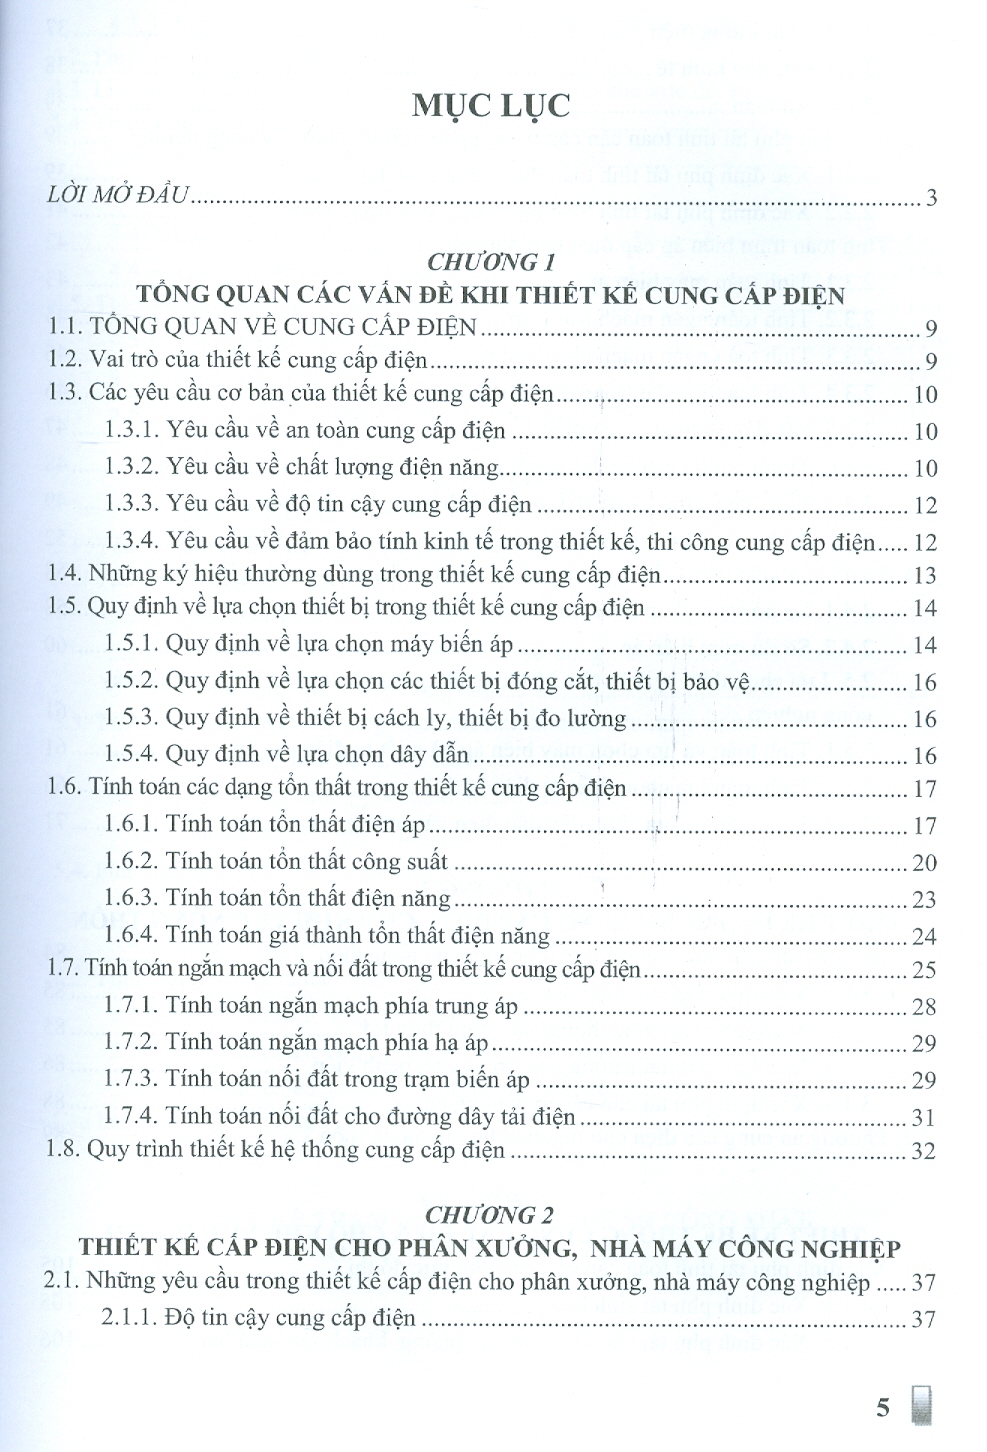 Thiết Kế Hệ Thống Cung Cấp Điện - Trần Hùng Cường, Nguyễn Thị Thắm (In giới hạn 30 quyển)